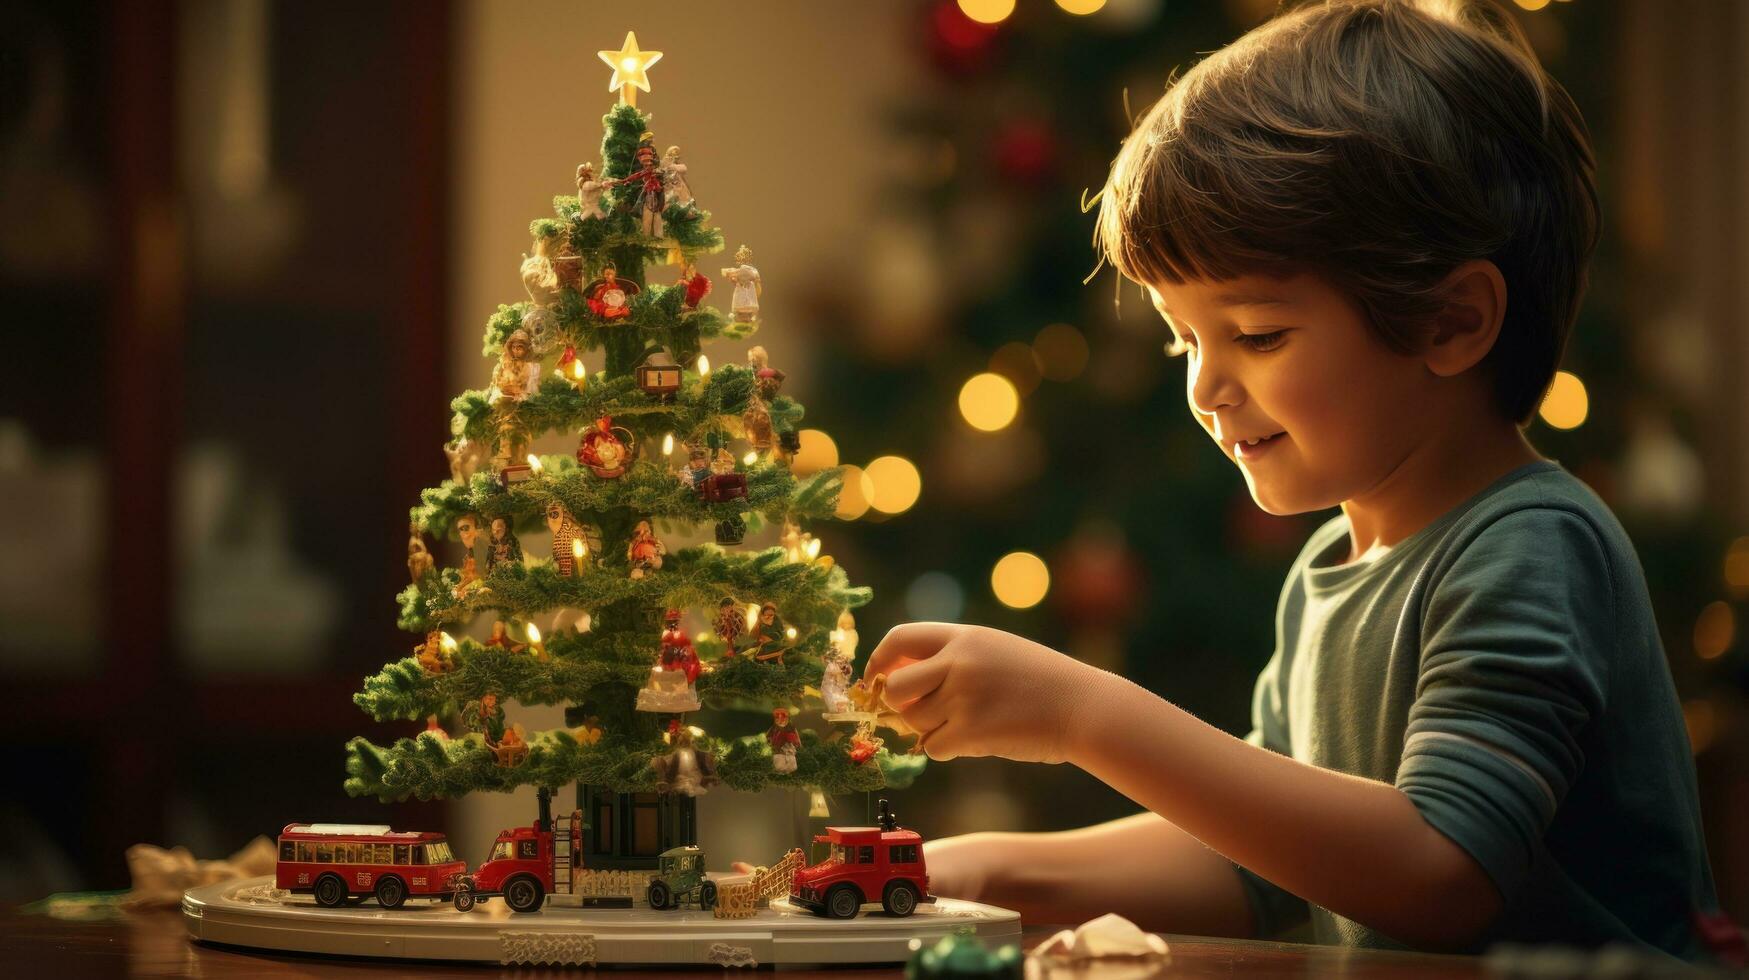 Kind Theaterstücke mit Spielzeug Zug sitzend unter christma Baum foto